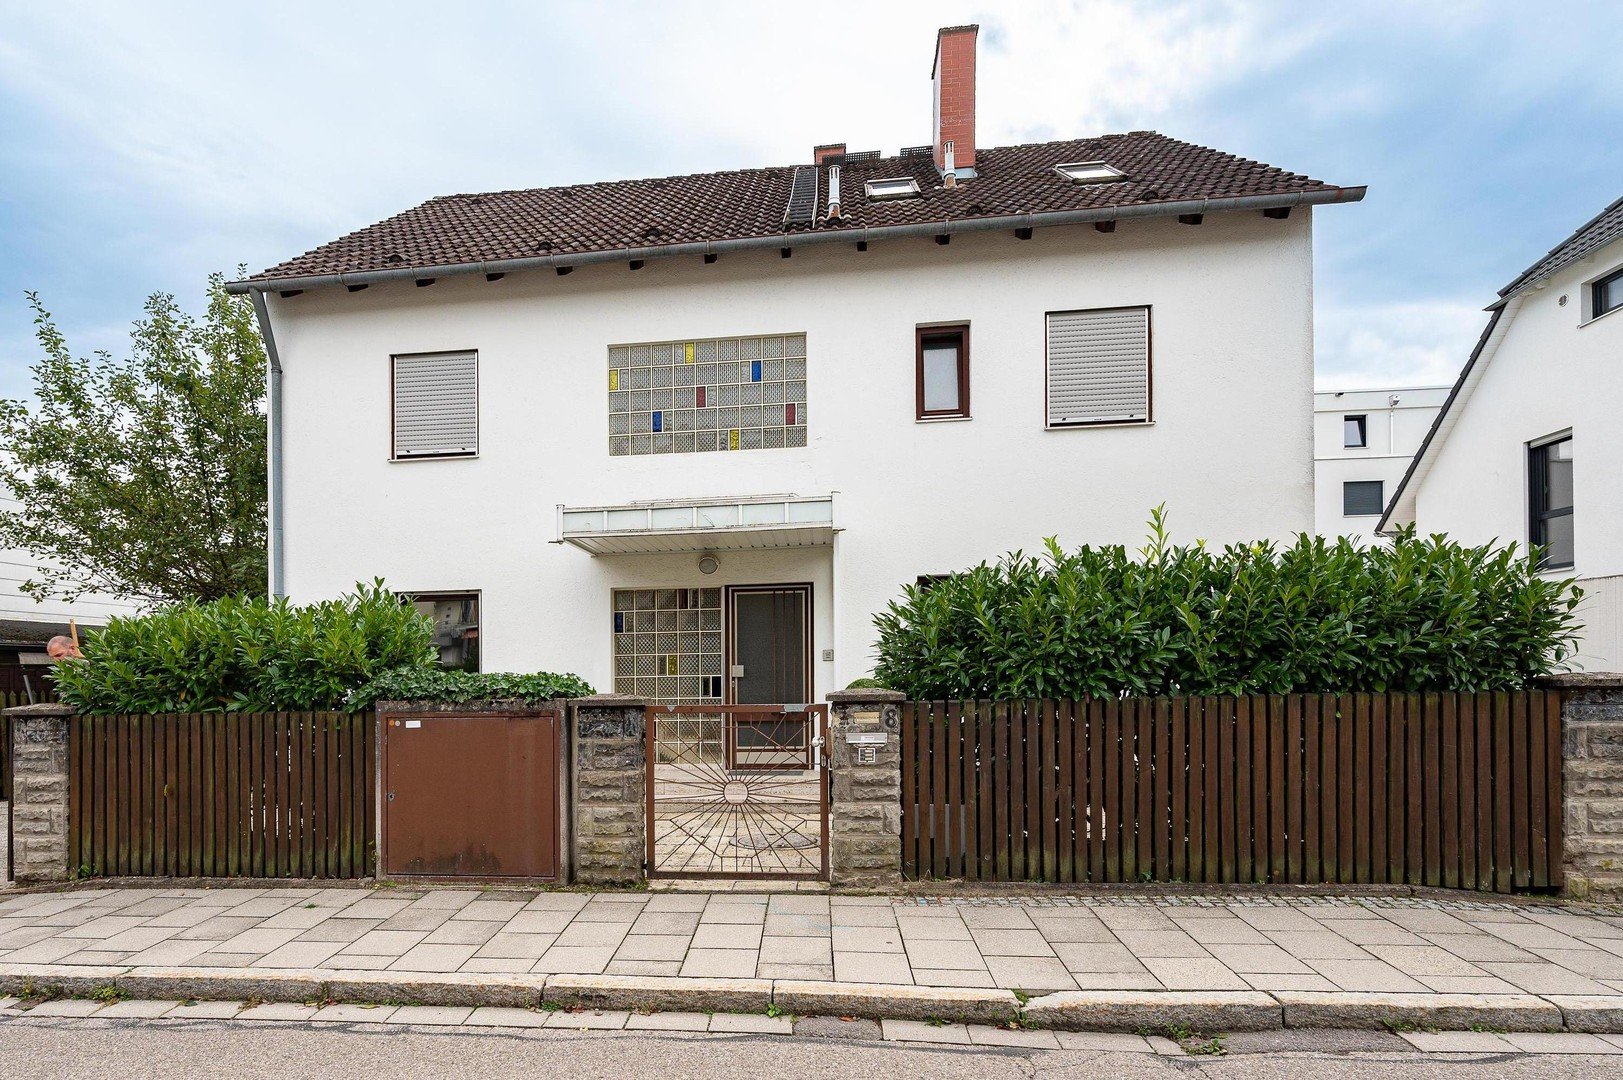 Komplettes Haus bei München möbliert für Monteure